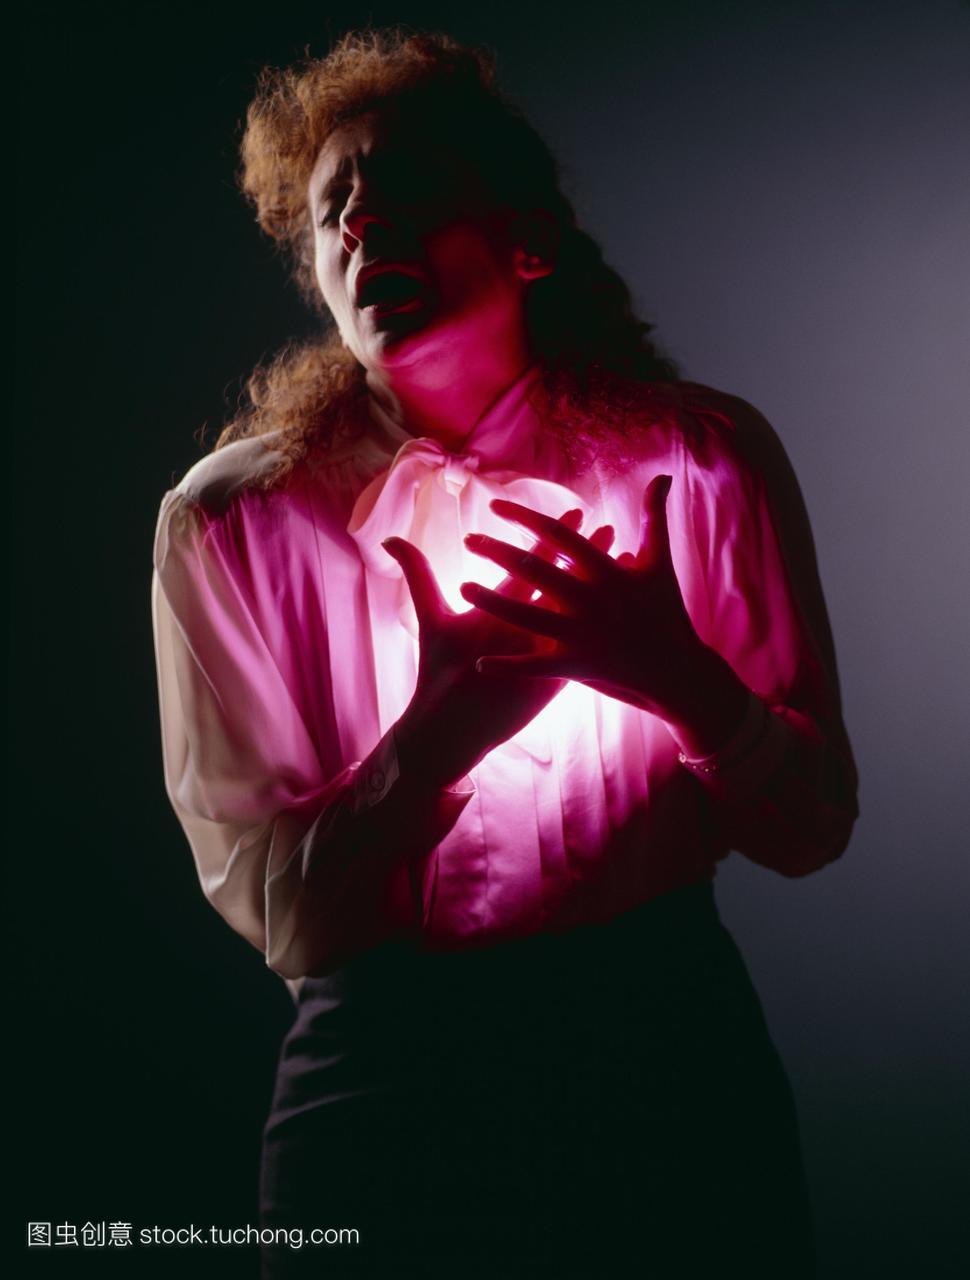 绞痛或心脏病发作时,在疼痛中紧紧抓住胸部。